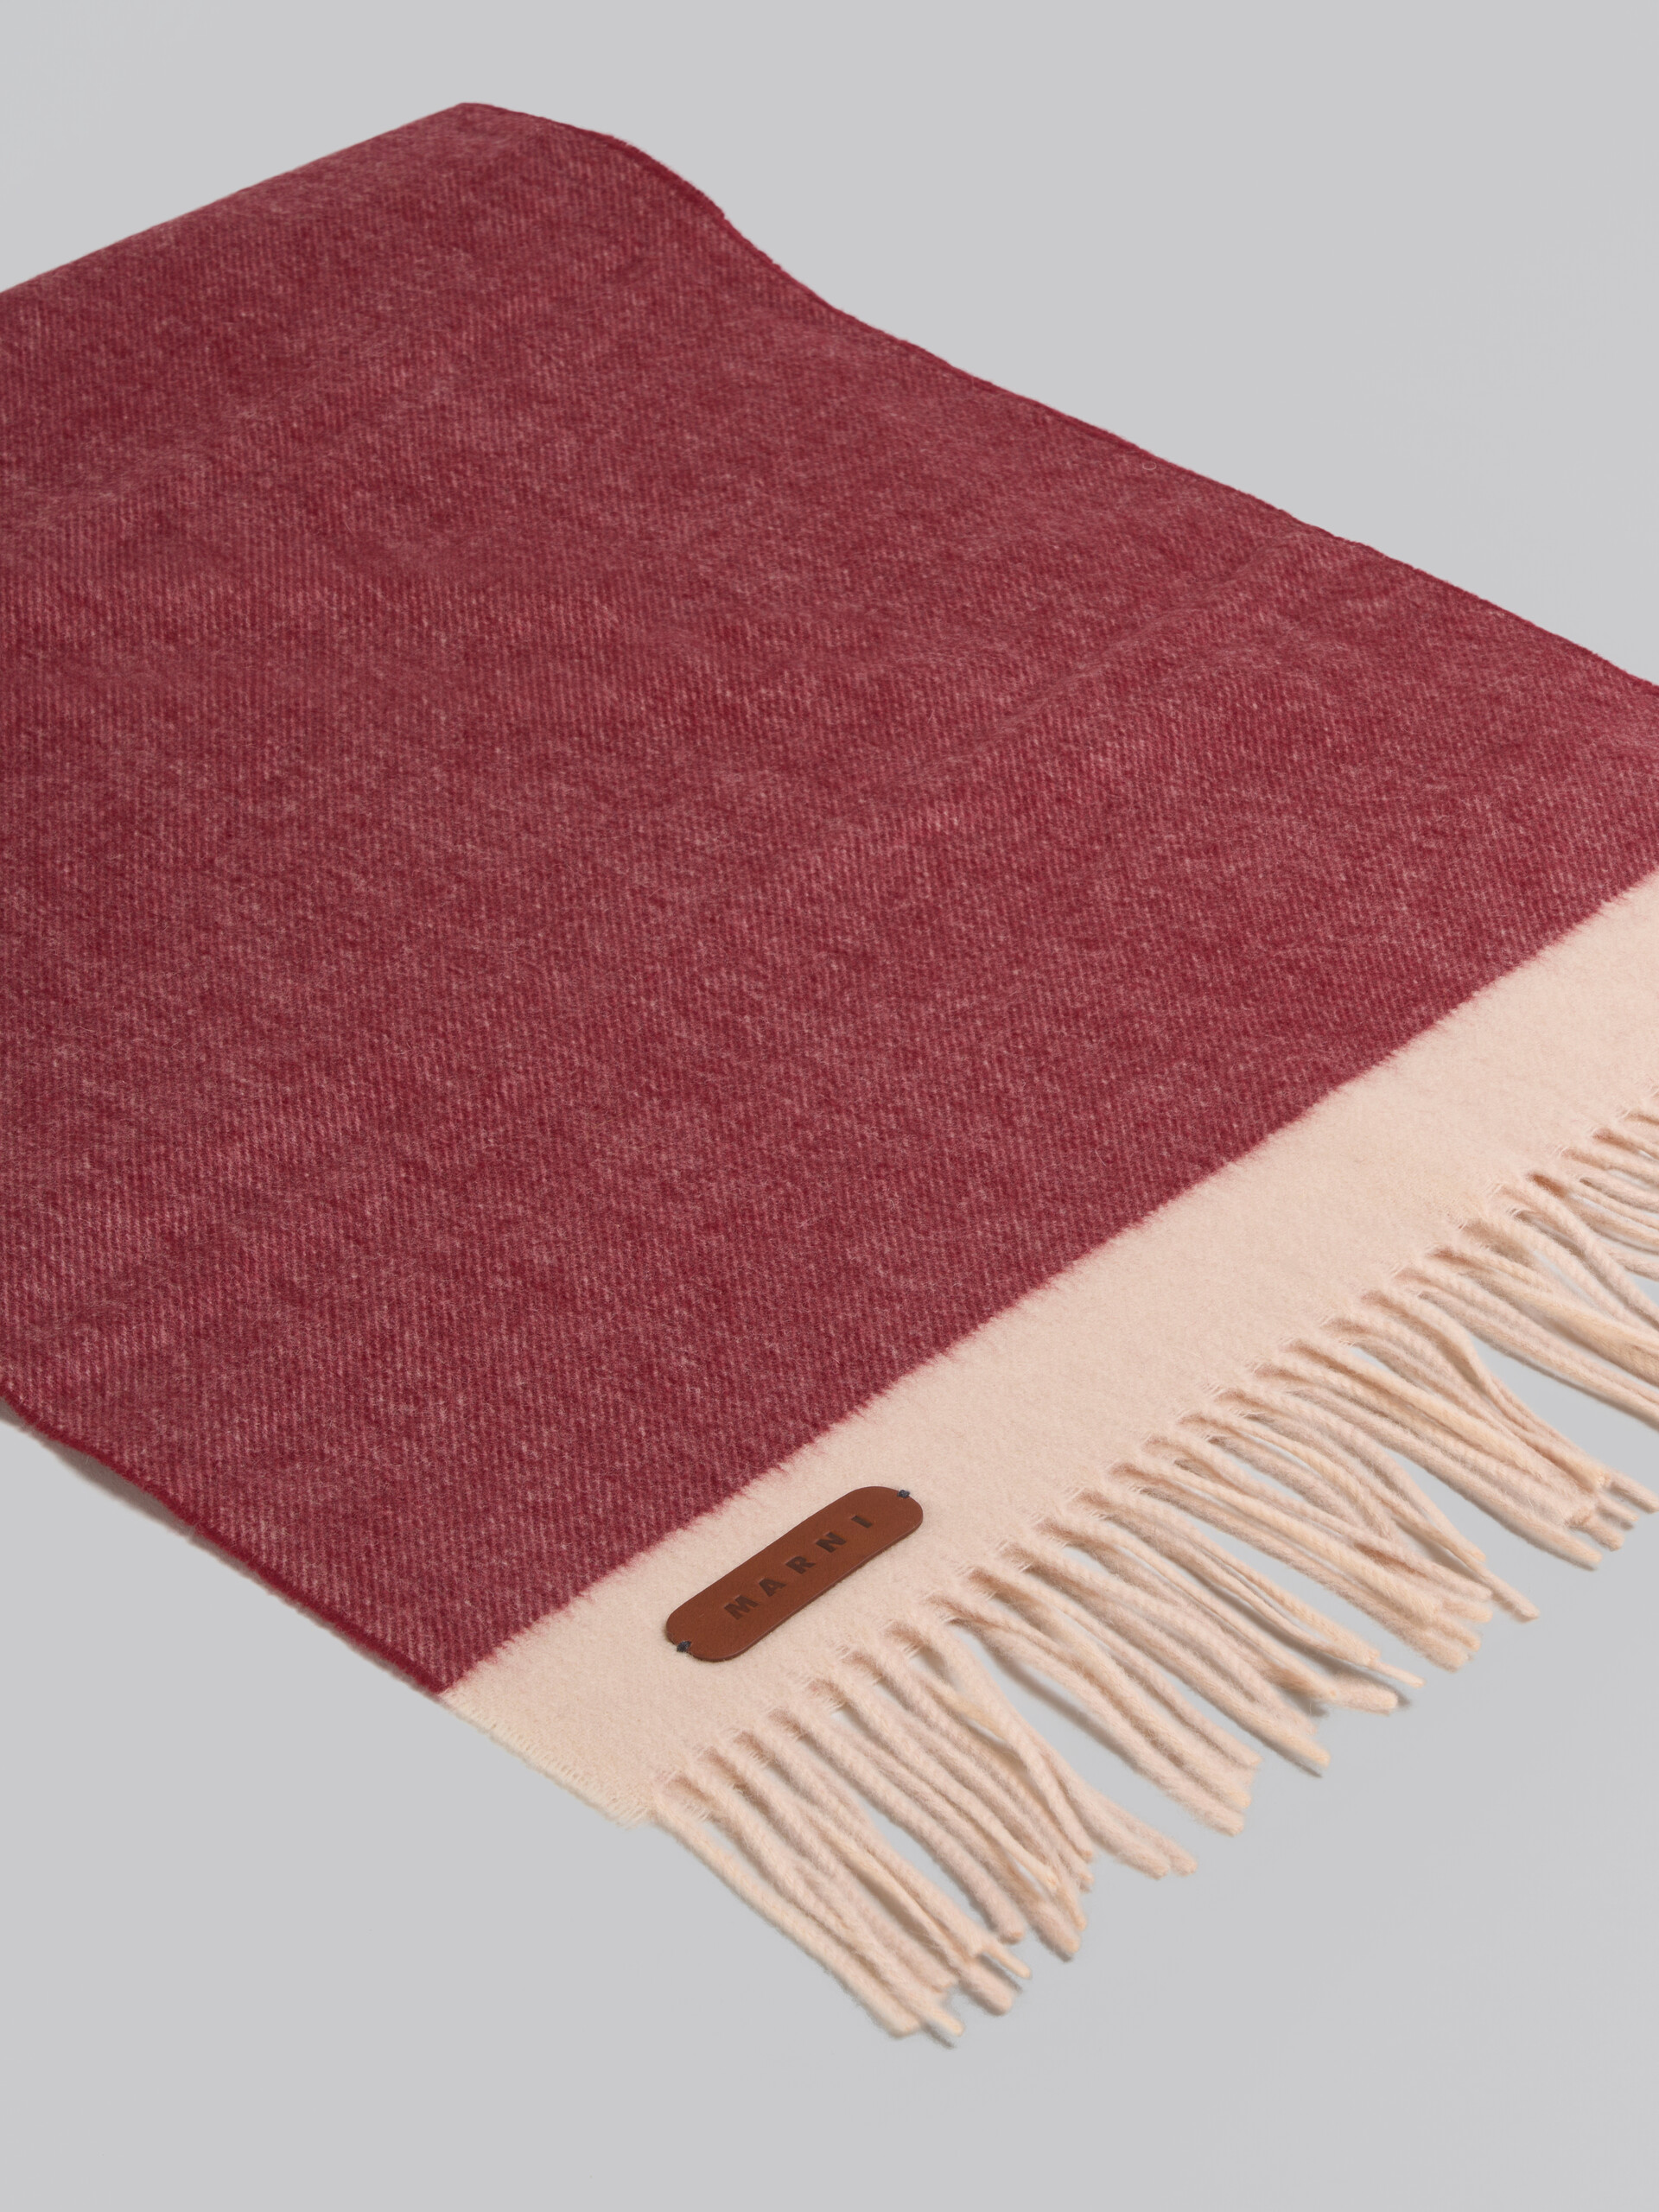 Sciarpa in cashmere e lana vergine bordeaux con applicazione in pelle - Sciarpe - Image 4